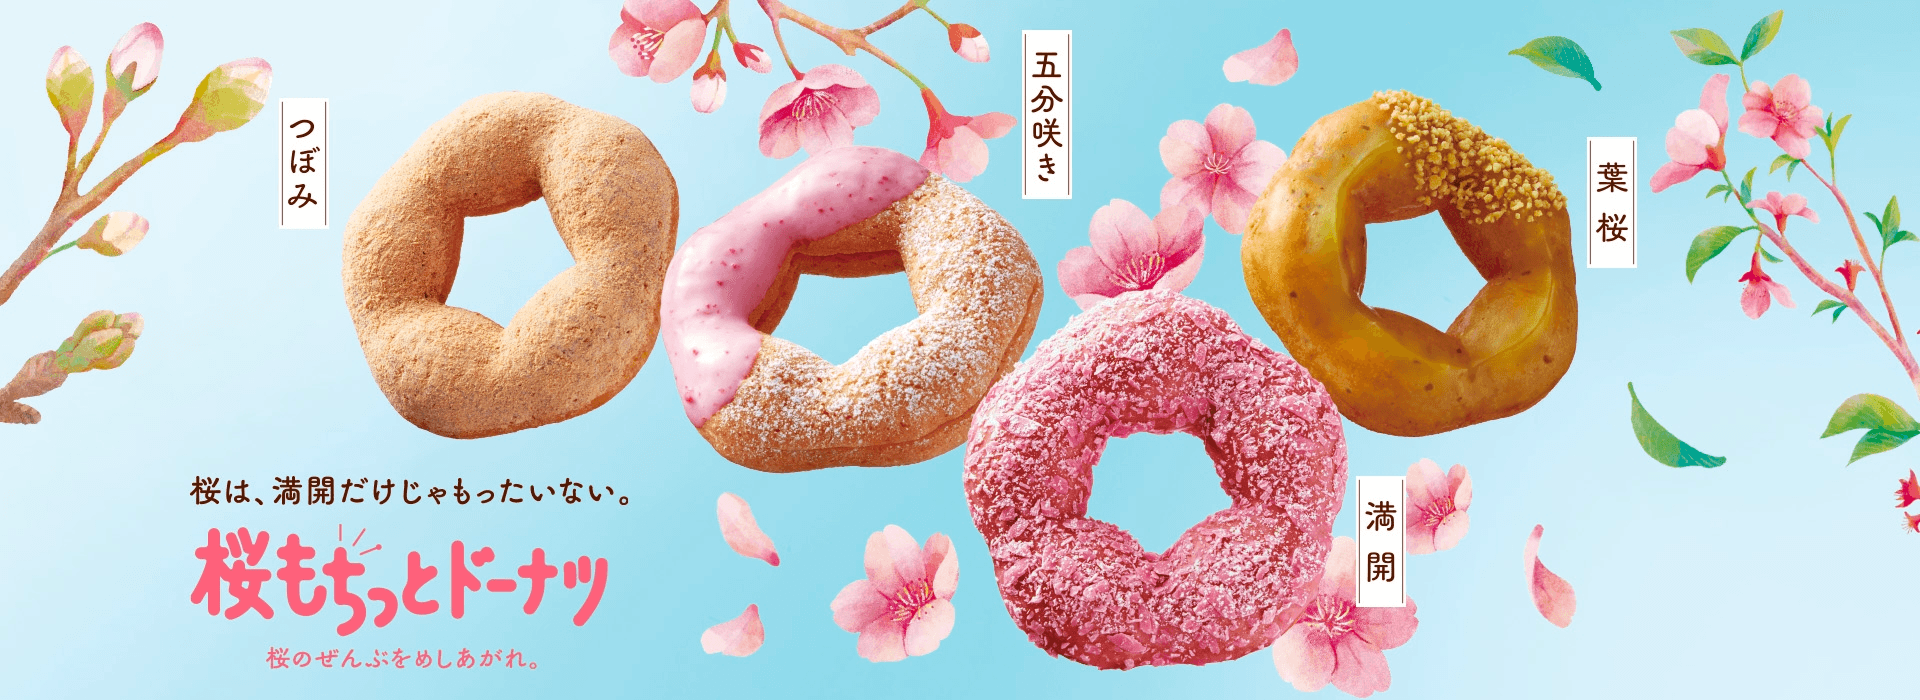 Source: Mister Donut Japan